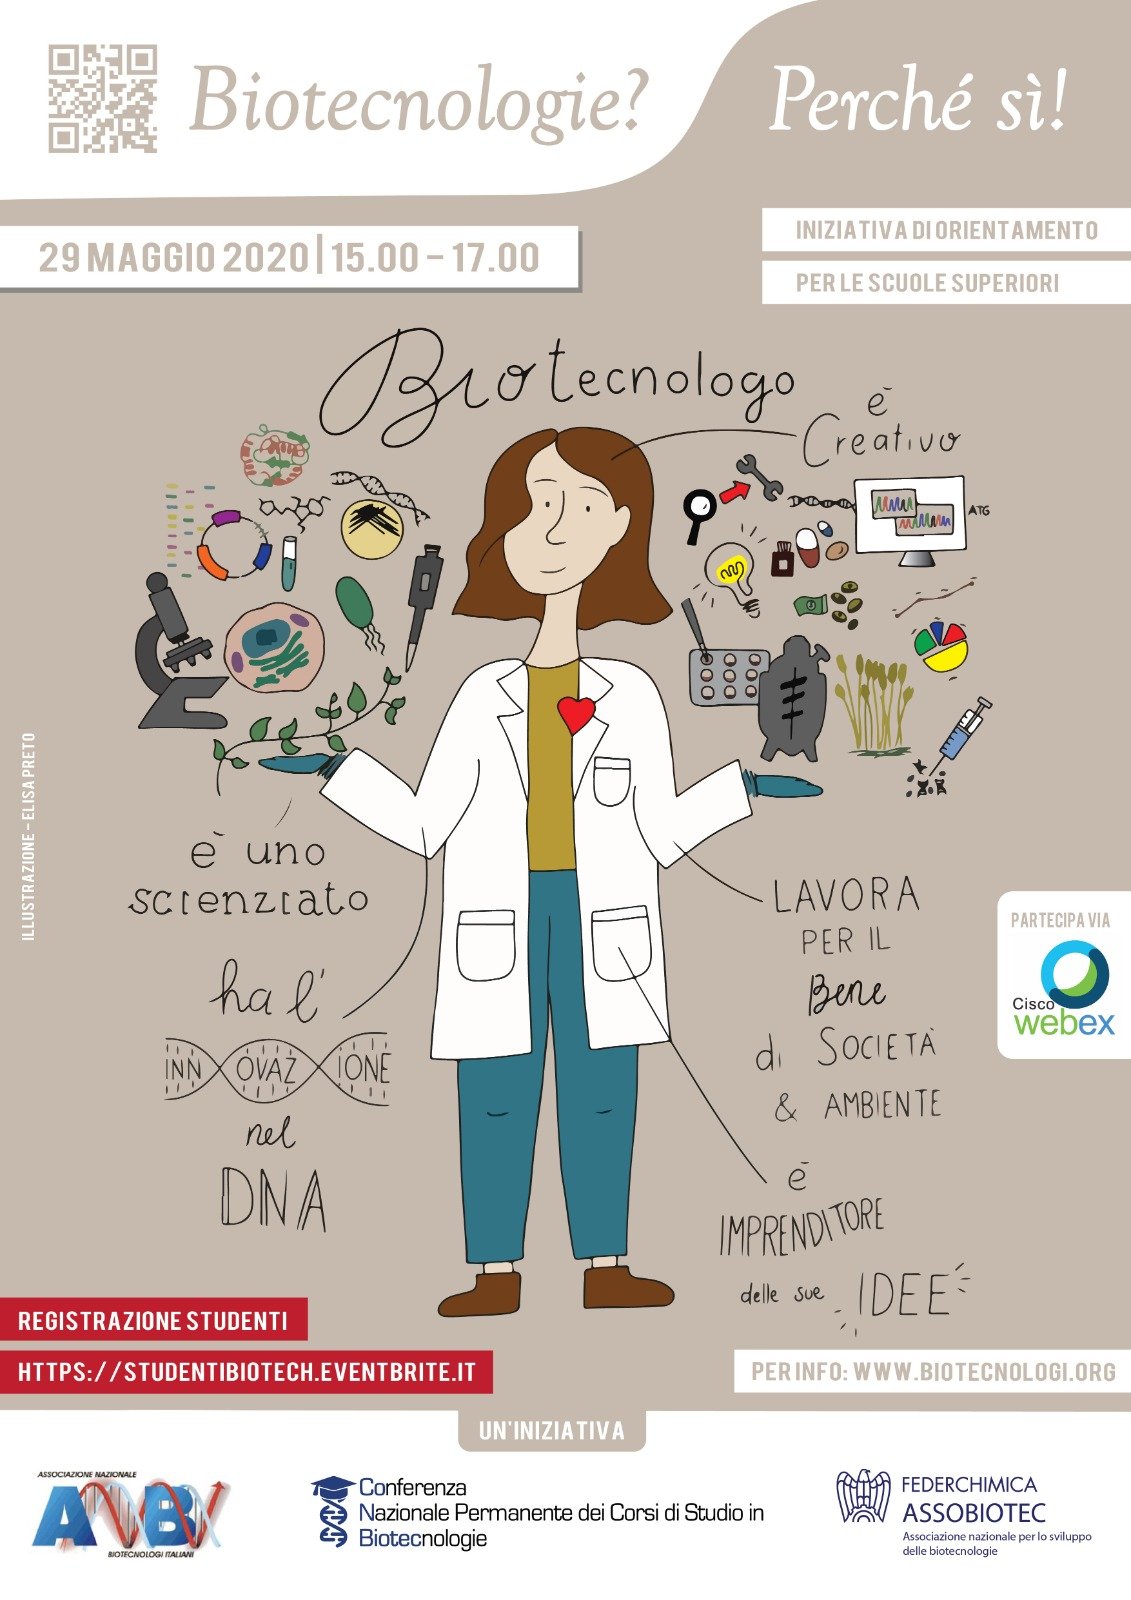 ‘Biotecnologie? Perché sì!’,presentazione nazionale dei percorsi di Laurea e del mondo del lavoro nel settore Biotech